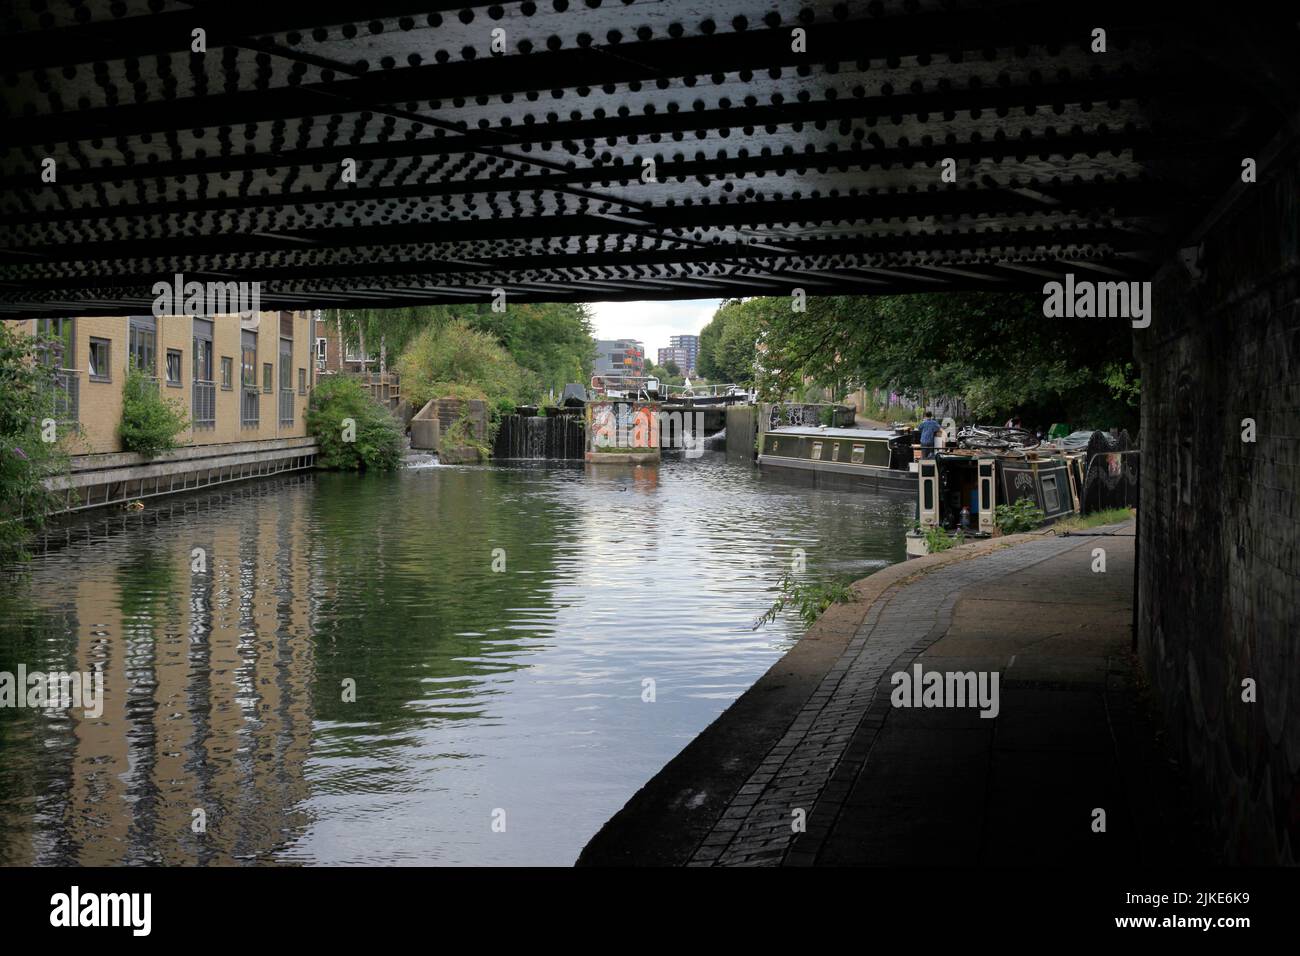 Regent's Canal at Hackney E8 with narrowboats Stock Photo